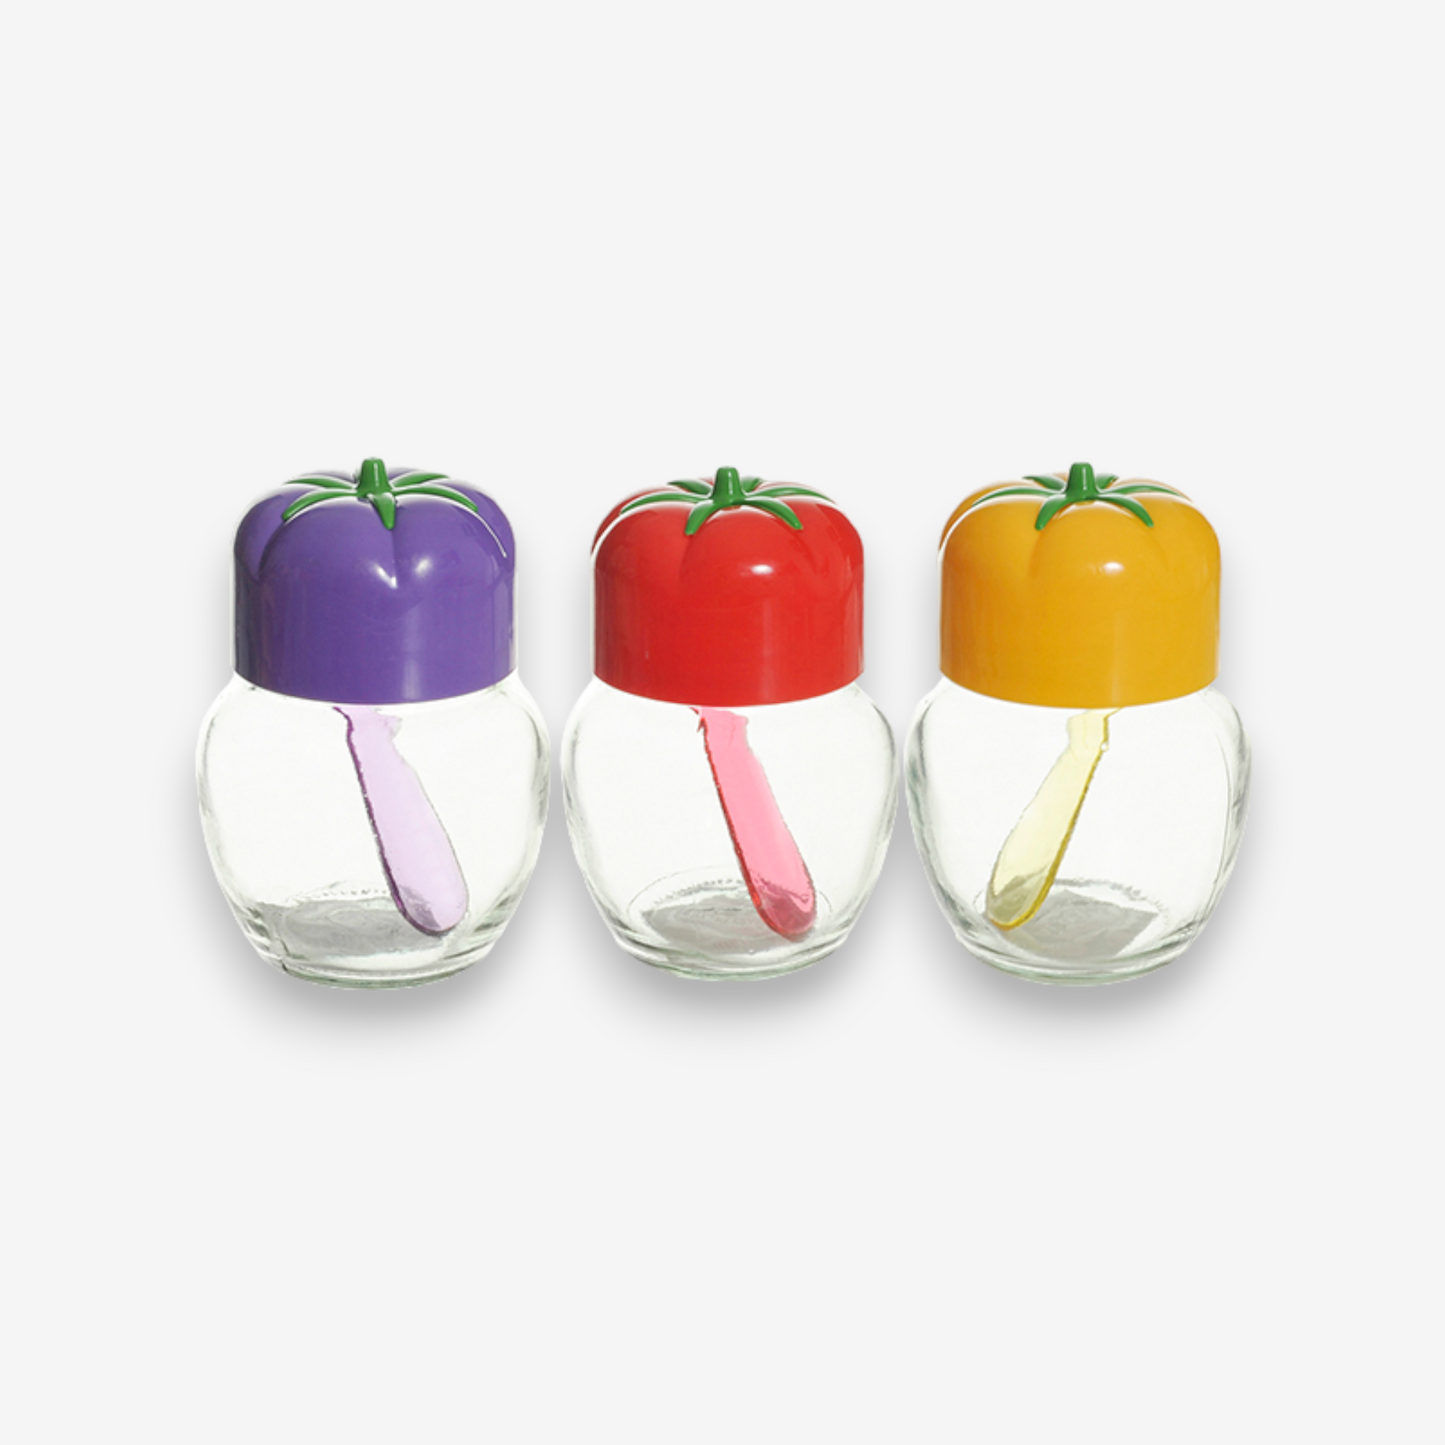 Tomato Shape Spice Jar with Plastic Spoon - Lunaz Shop